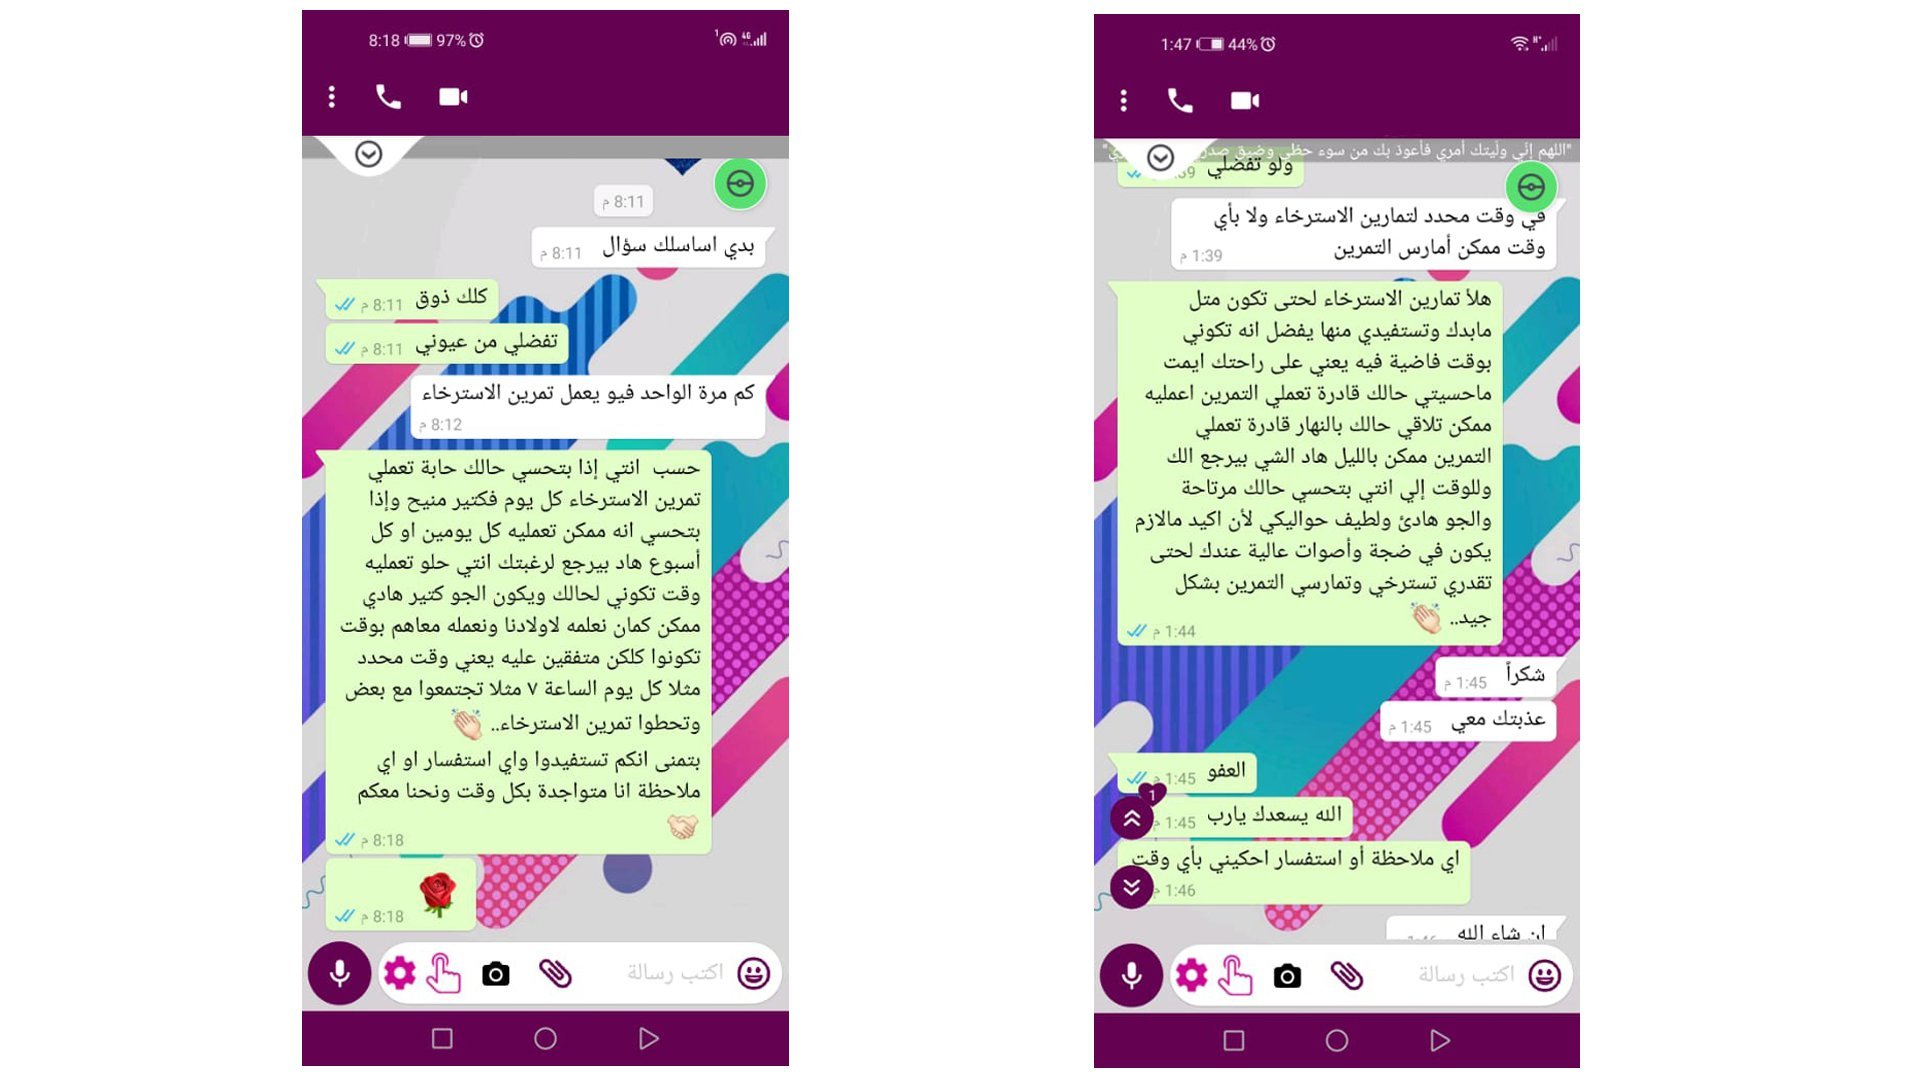 War Child docenten in Jordanië helpen ouders hun kinderen lesgeven op afstand door corona met Whatsapp berichten